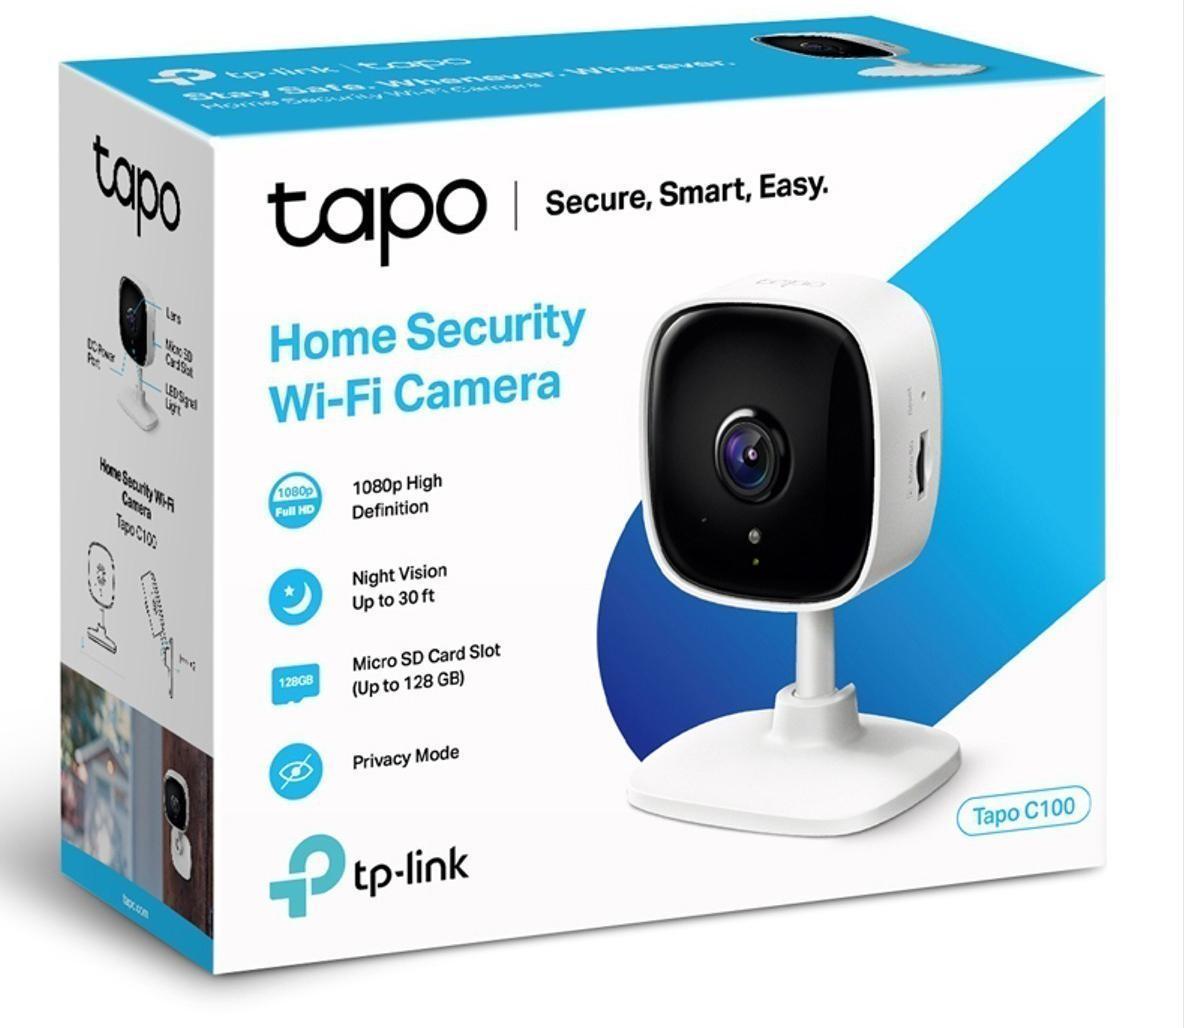 TP-Link Tapo C100 inceleme - Uygun fiyatlı Wi-Fi kamera